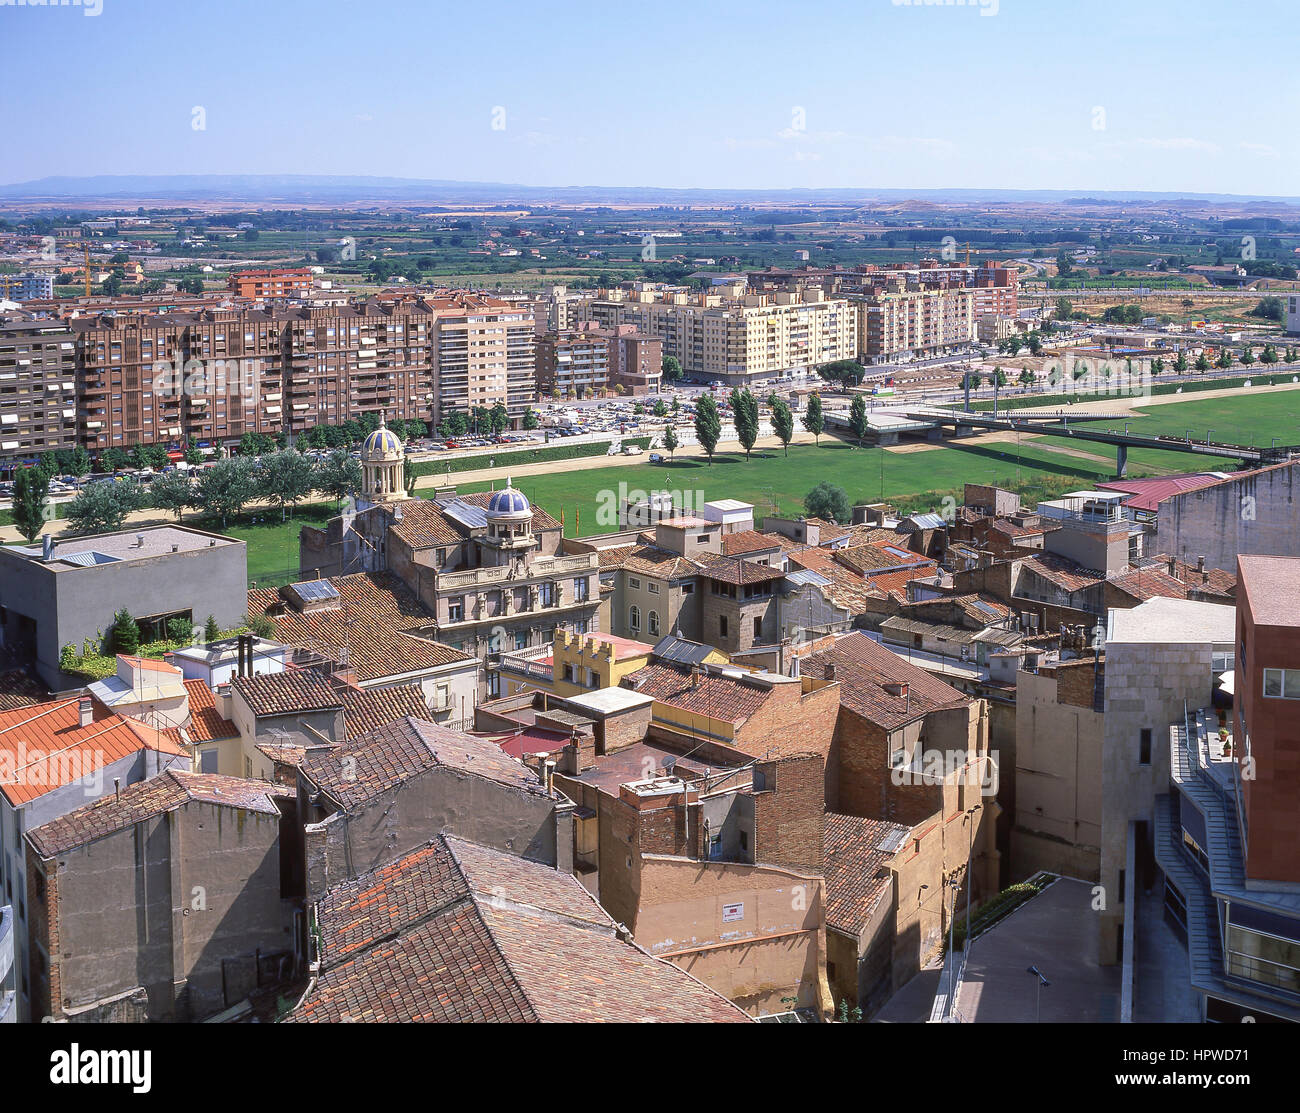 Vista de la ciudad desde la ciudadela, Jaca, Huesca, Aragón, el Reino de España Foto de stock